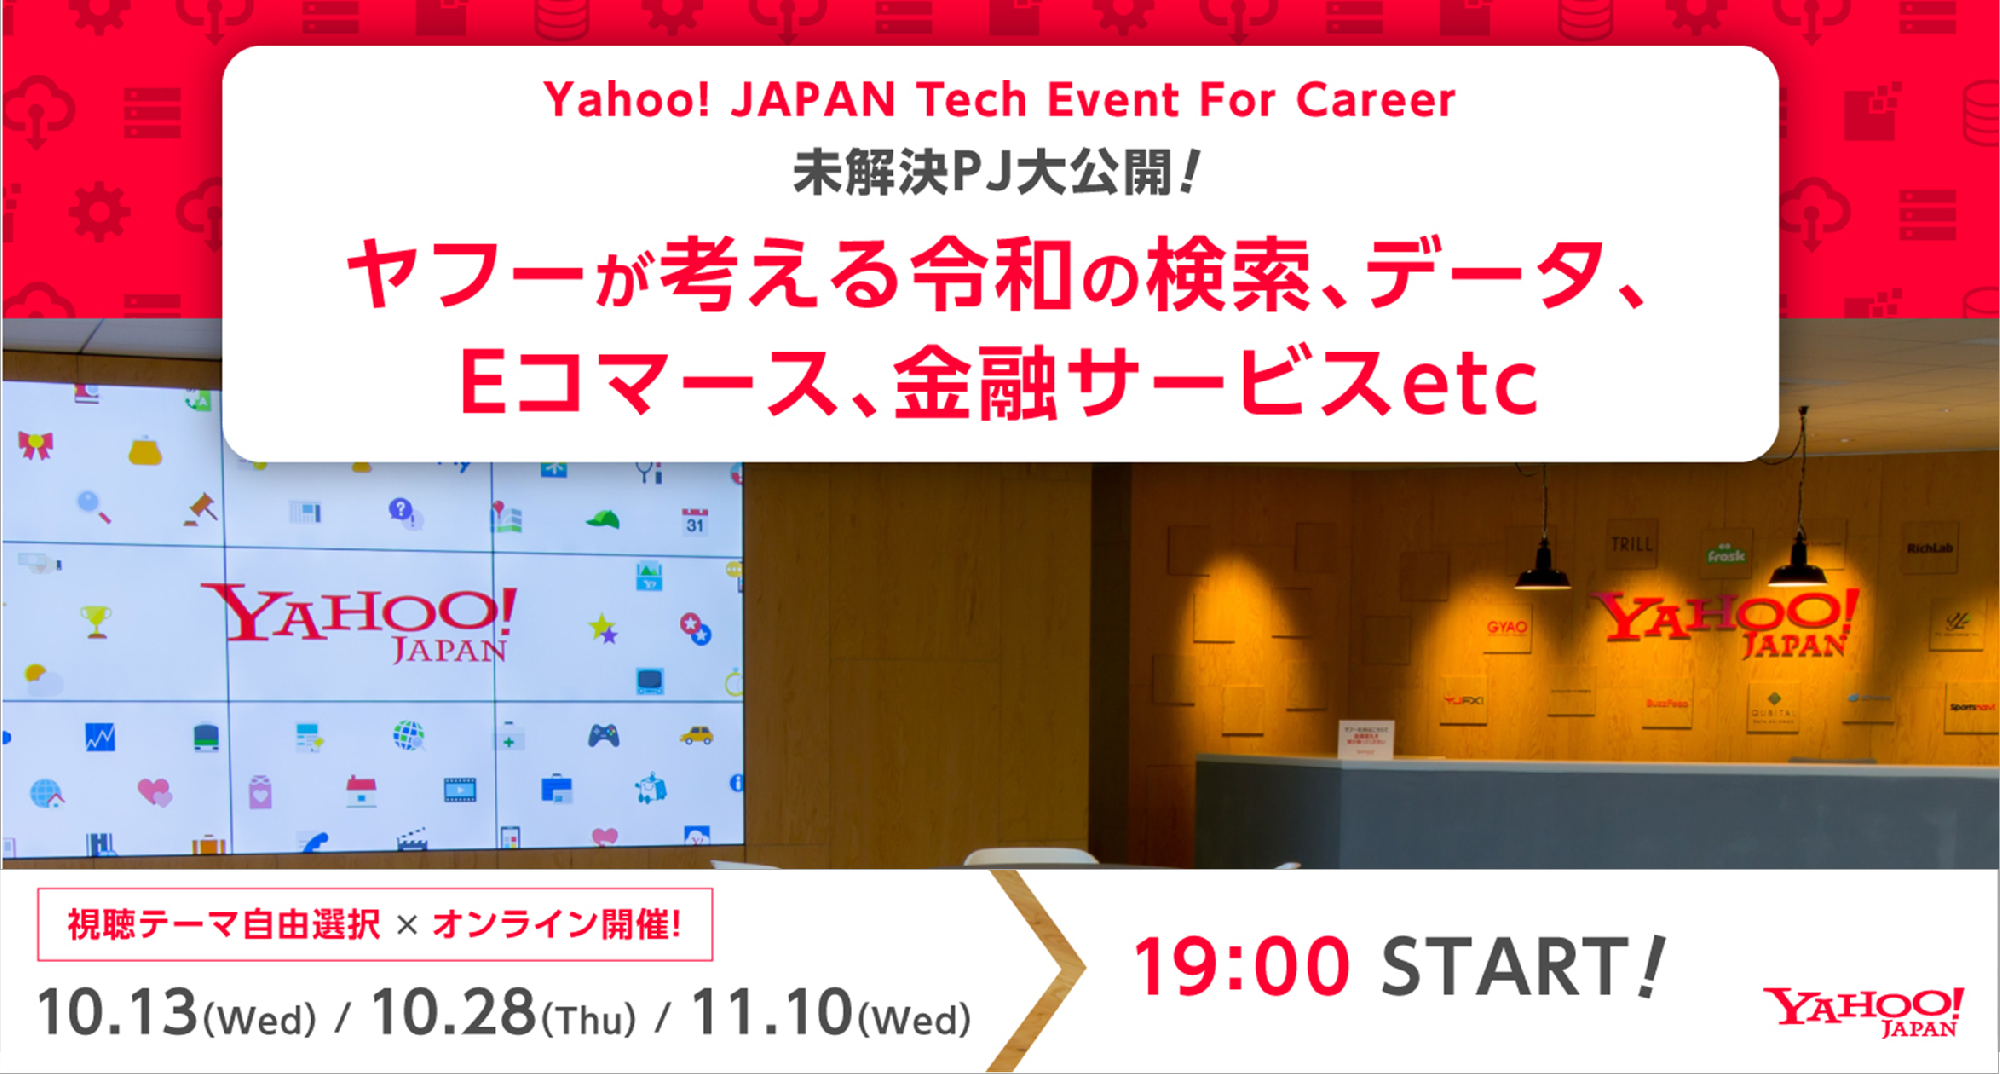 Yahoo Japan Tech Event For Career 21開催 Pjを大公開 ヤフーが抱える10の未解決課題 これからのヤフーを一緒に創ってみませんか 視聴テーマ自由選択 オンライン開催 10 13 水 10 28 木 11 10 水 19 00start Linotice